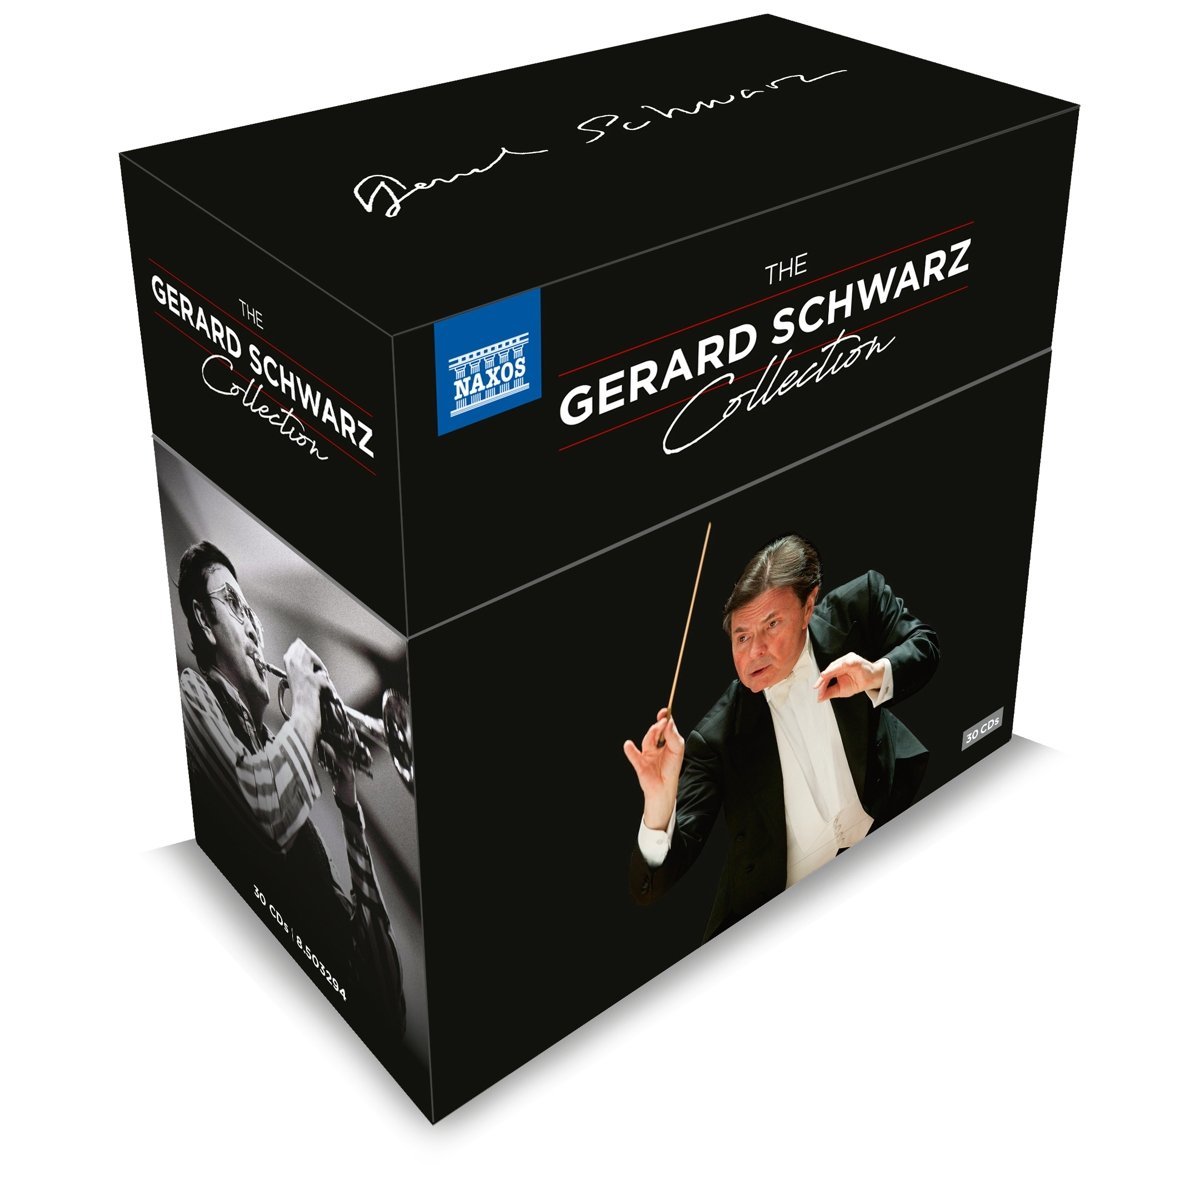 Audio Cd Gerard Schwarz: The Collection (30 Cd) NUOVO SIGILLATO, EDIZIONE DEL 13/10/2017 SUBITO DISPONIBILE